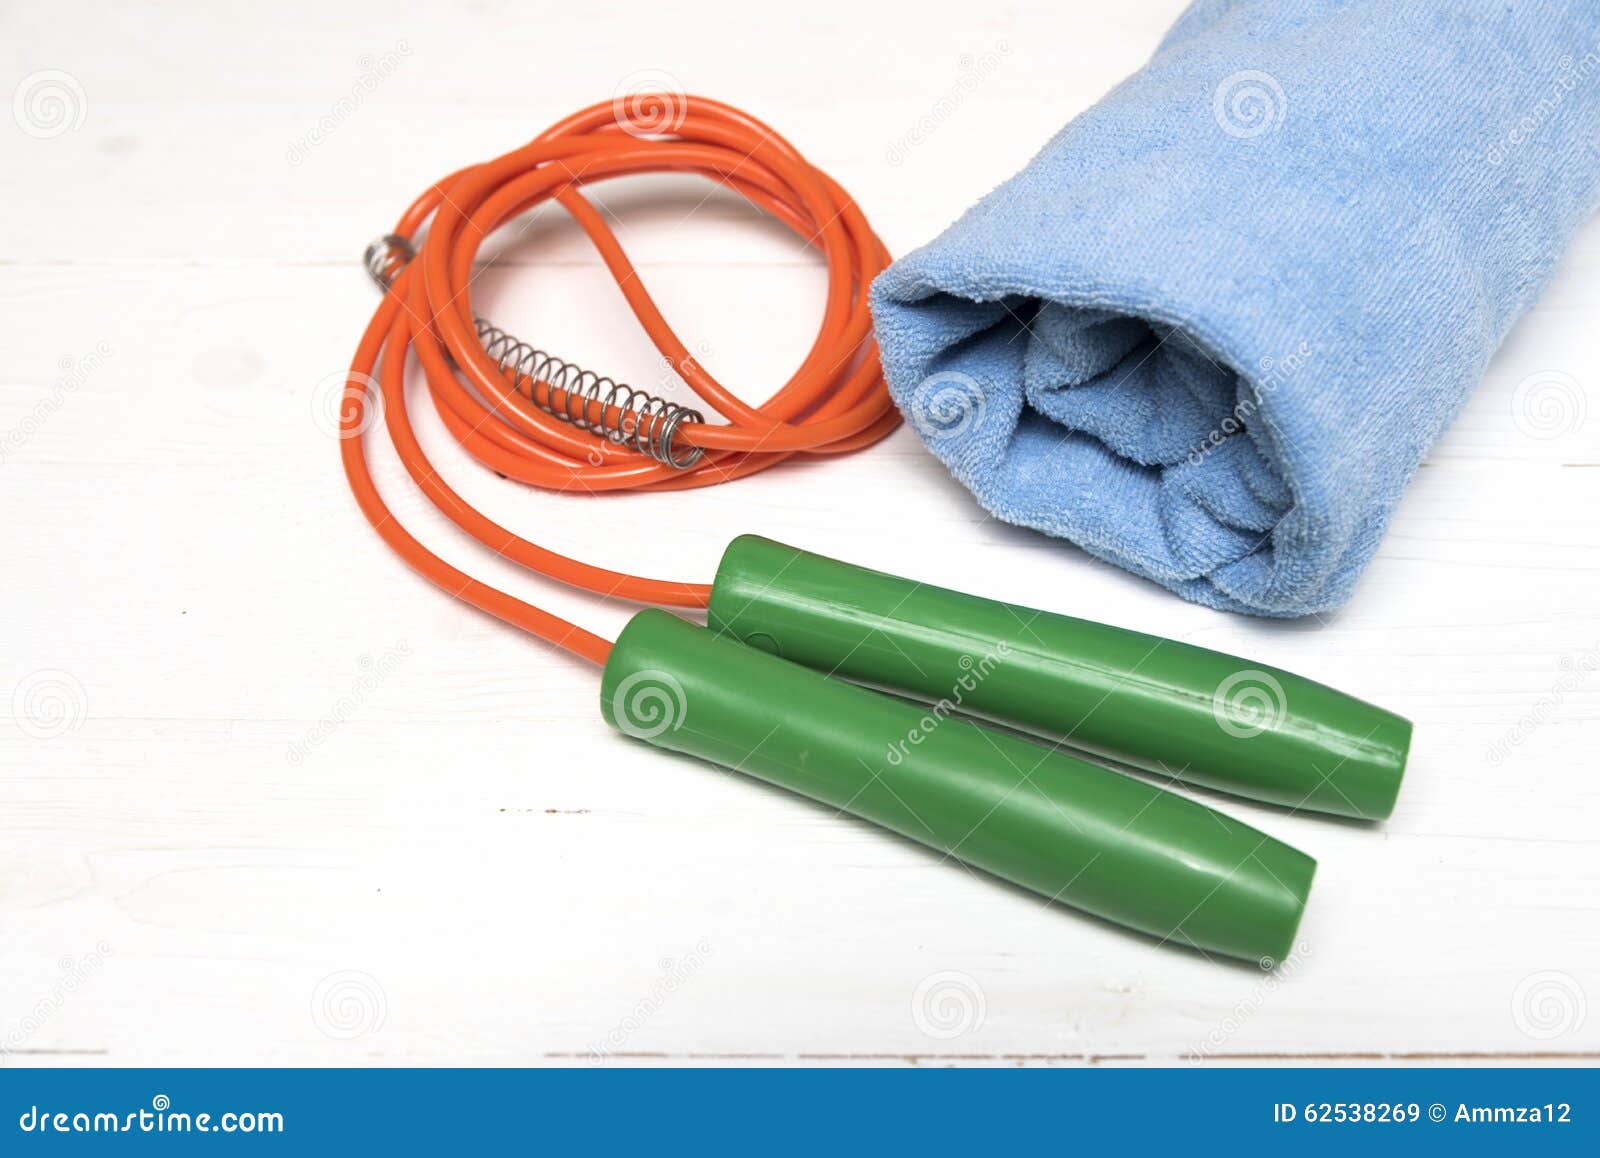 Оборудование фитнеса: полотенце, скача веревочка. Оборудование фитнеса: голубое полотенце, скача веревочка на белой деревянной таблице